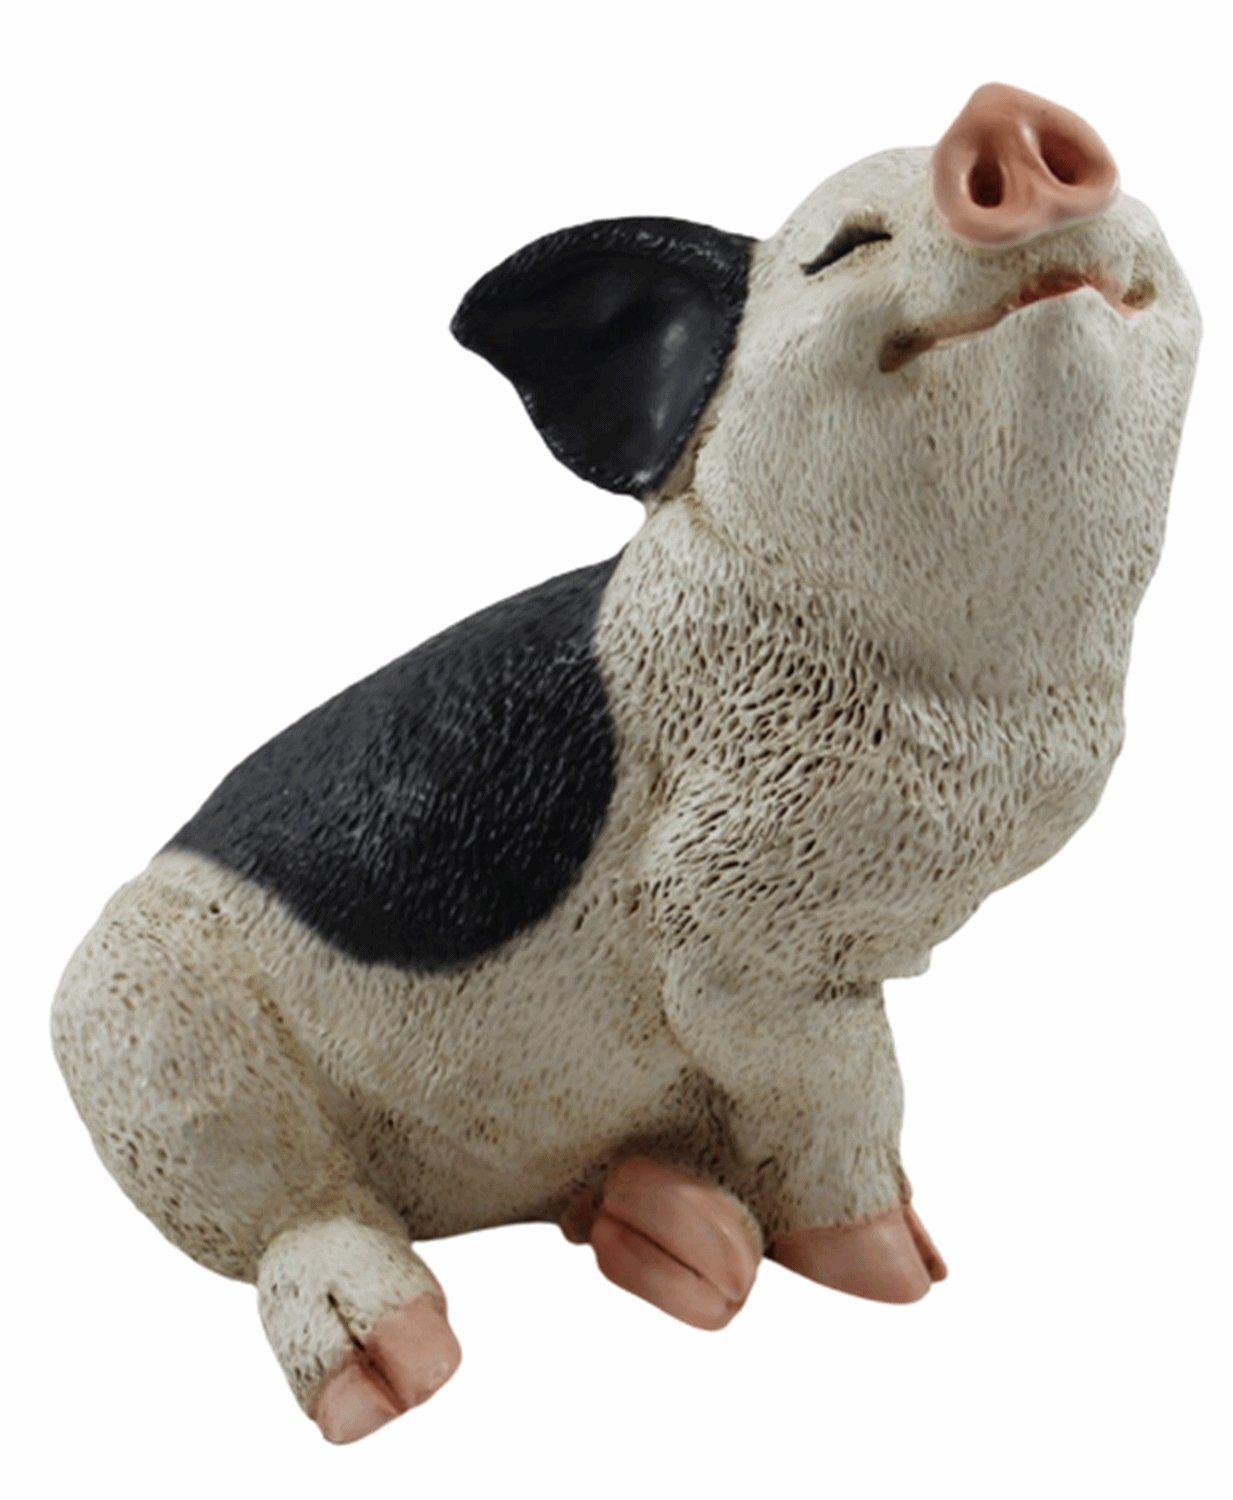 Castagna Tierfigur Figur Schwein Ferkel sitzend nach oben schauend gefleckt Kollektion Castagna aus Resin H 19 cm